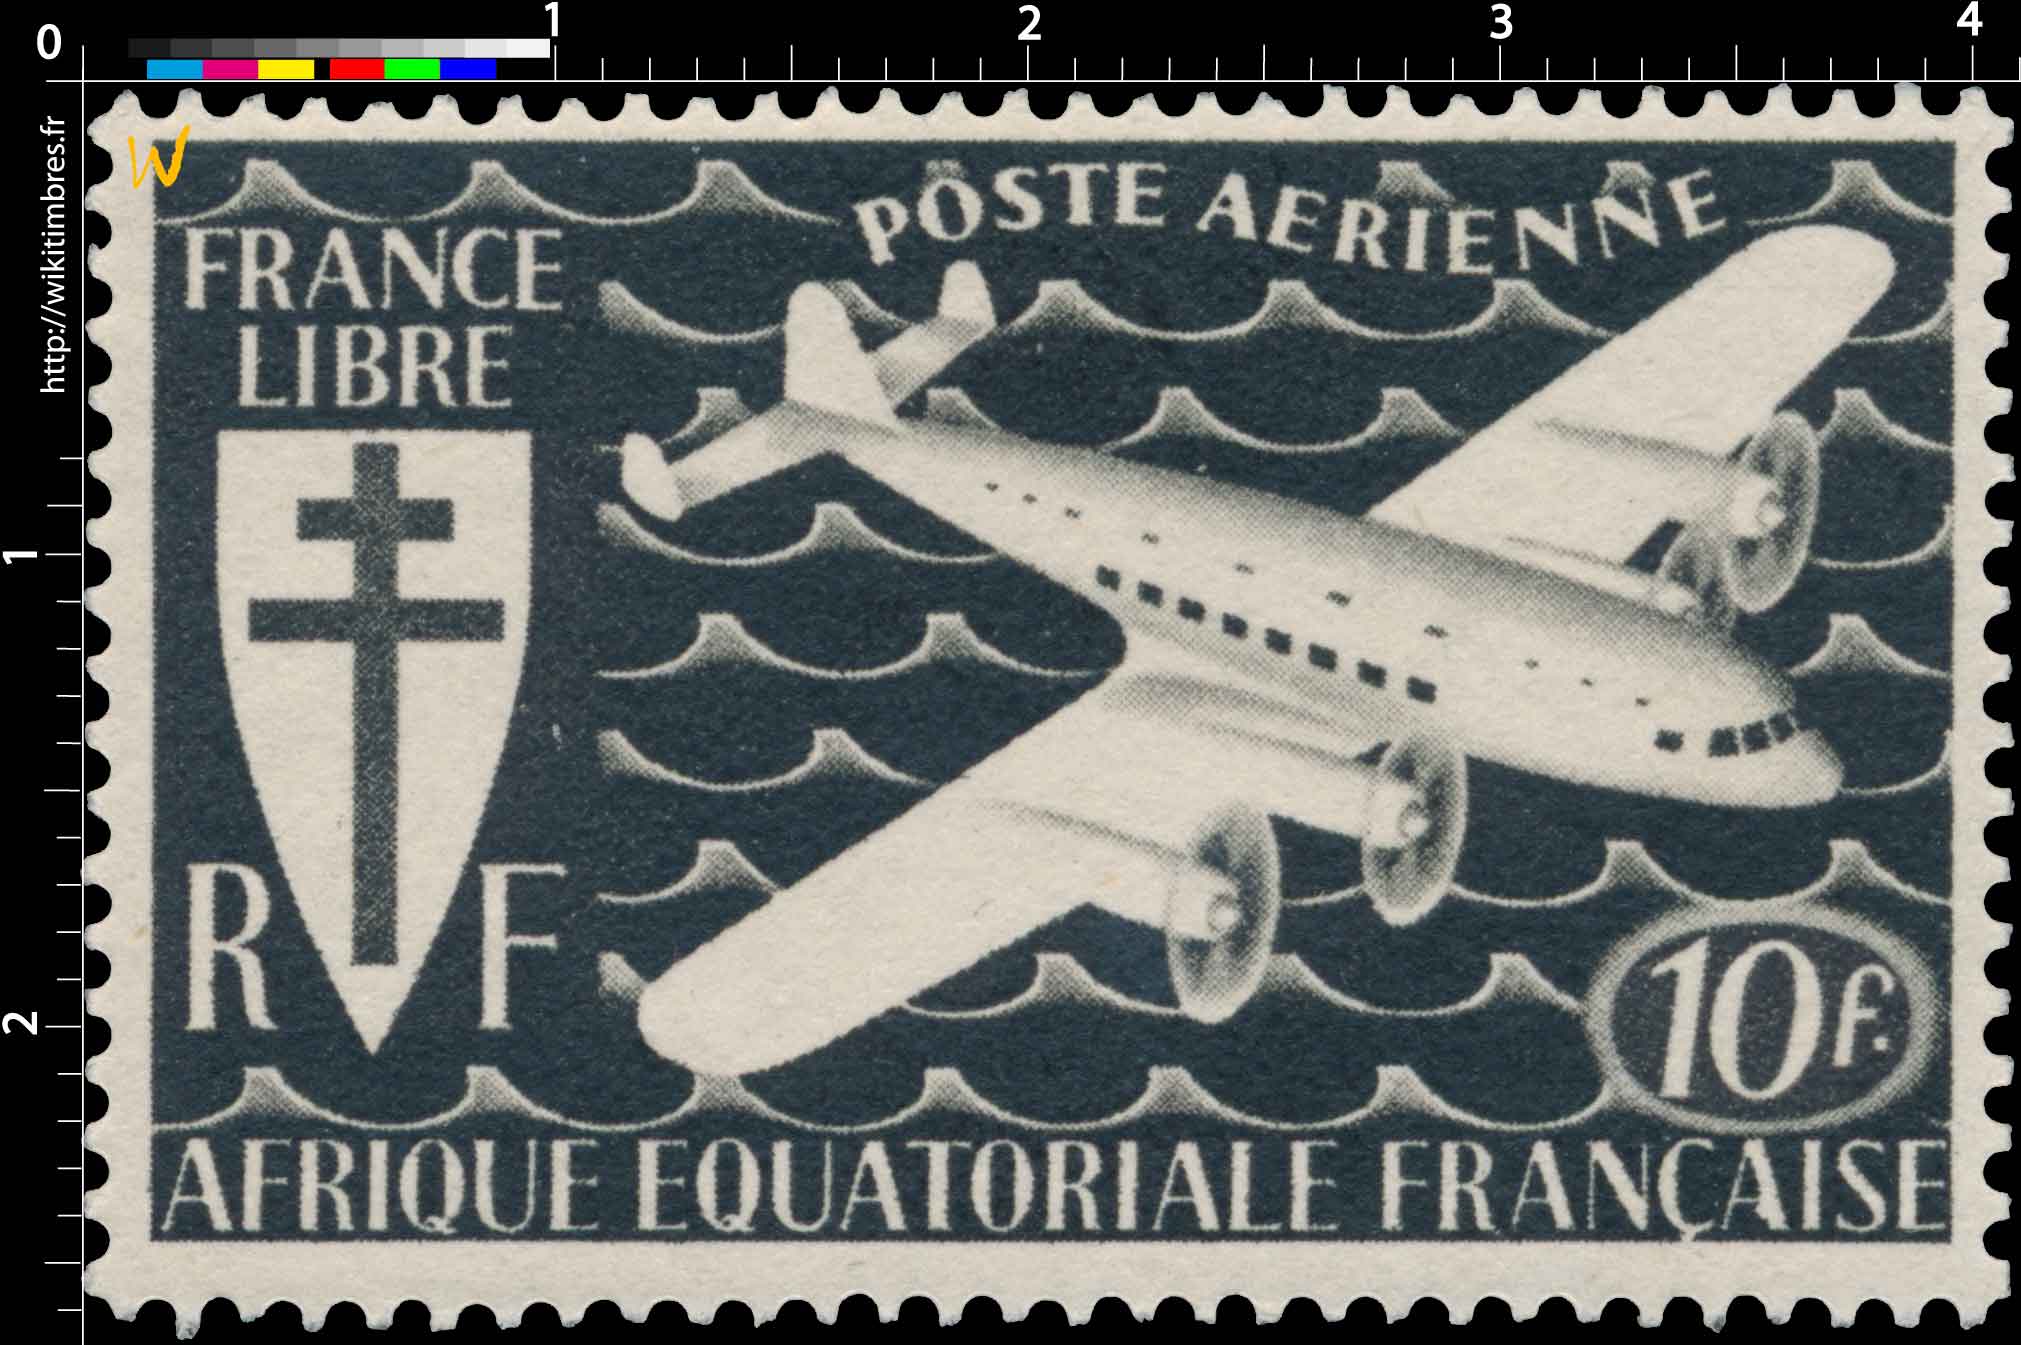 France libre Afrique Équatoriale Française poste aérienne